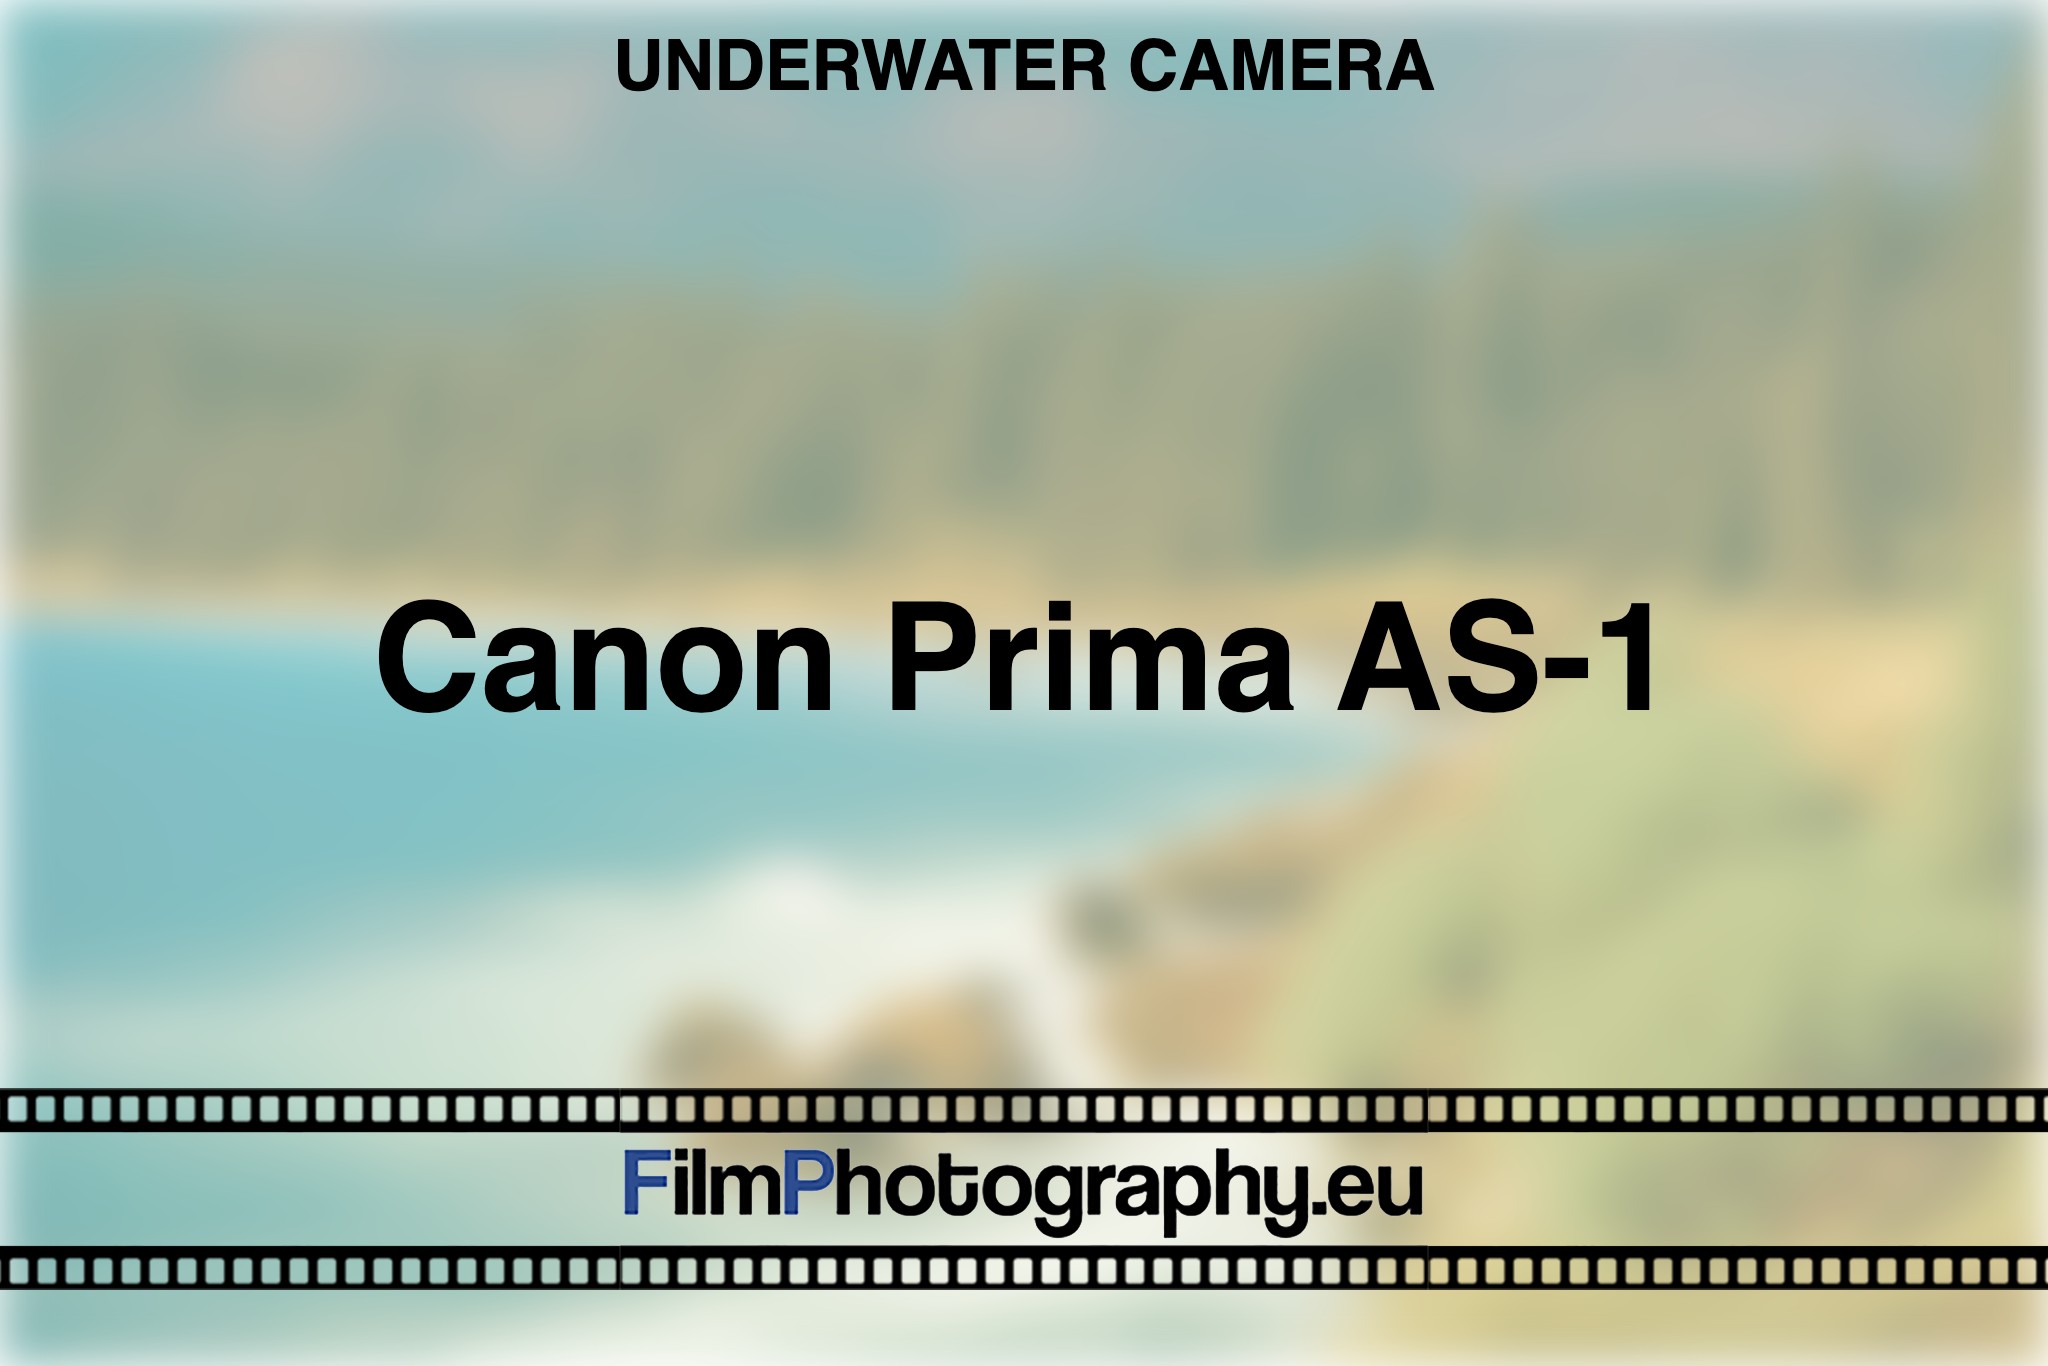 canon-prima-as-1-underwater-camera-bnv